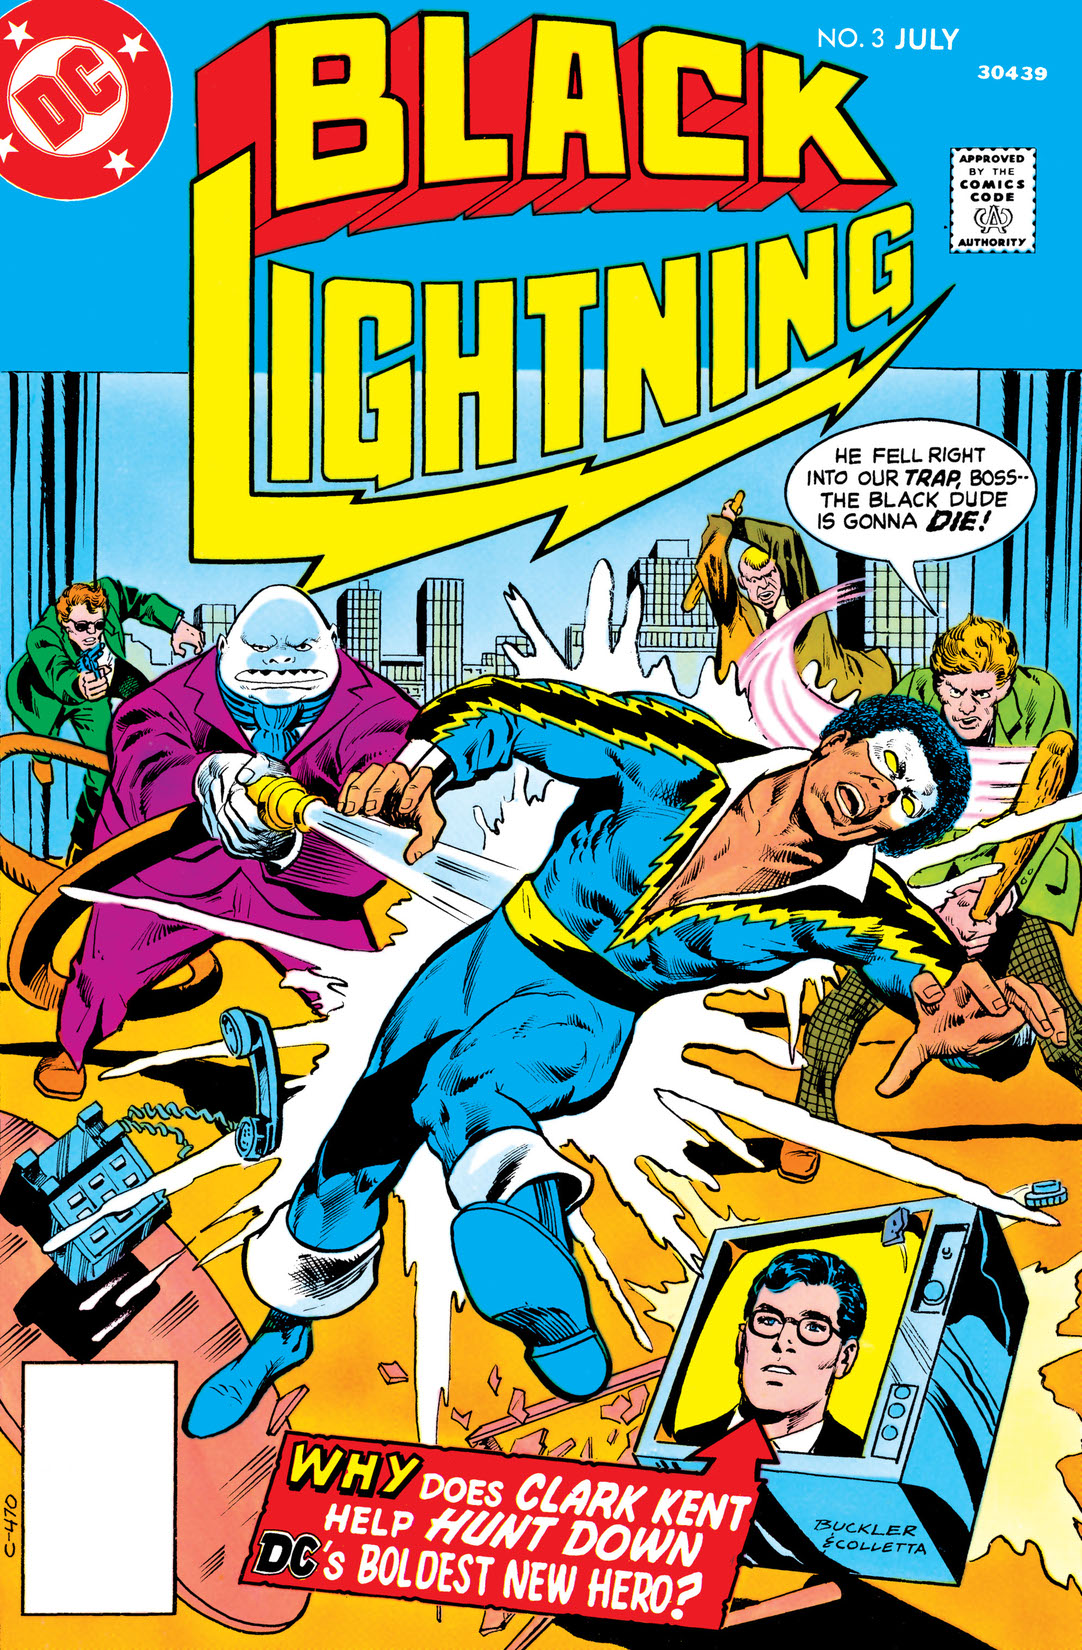 Black Lightning (1977-) #3 preview images